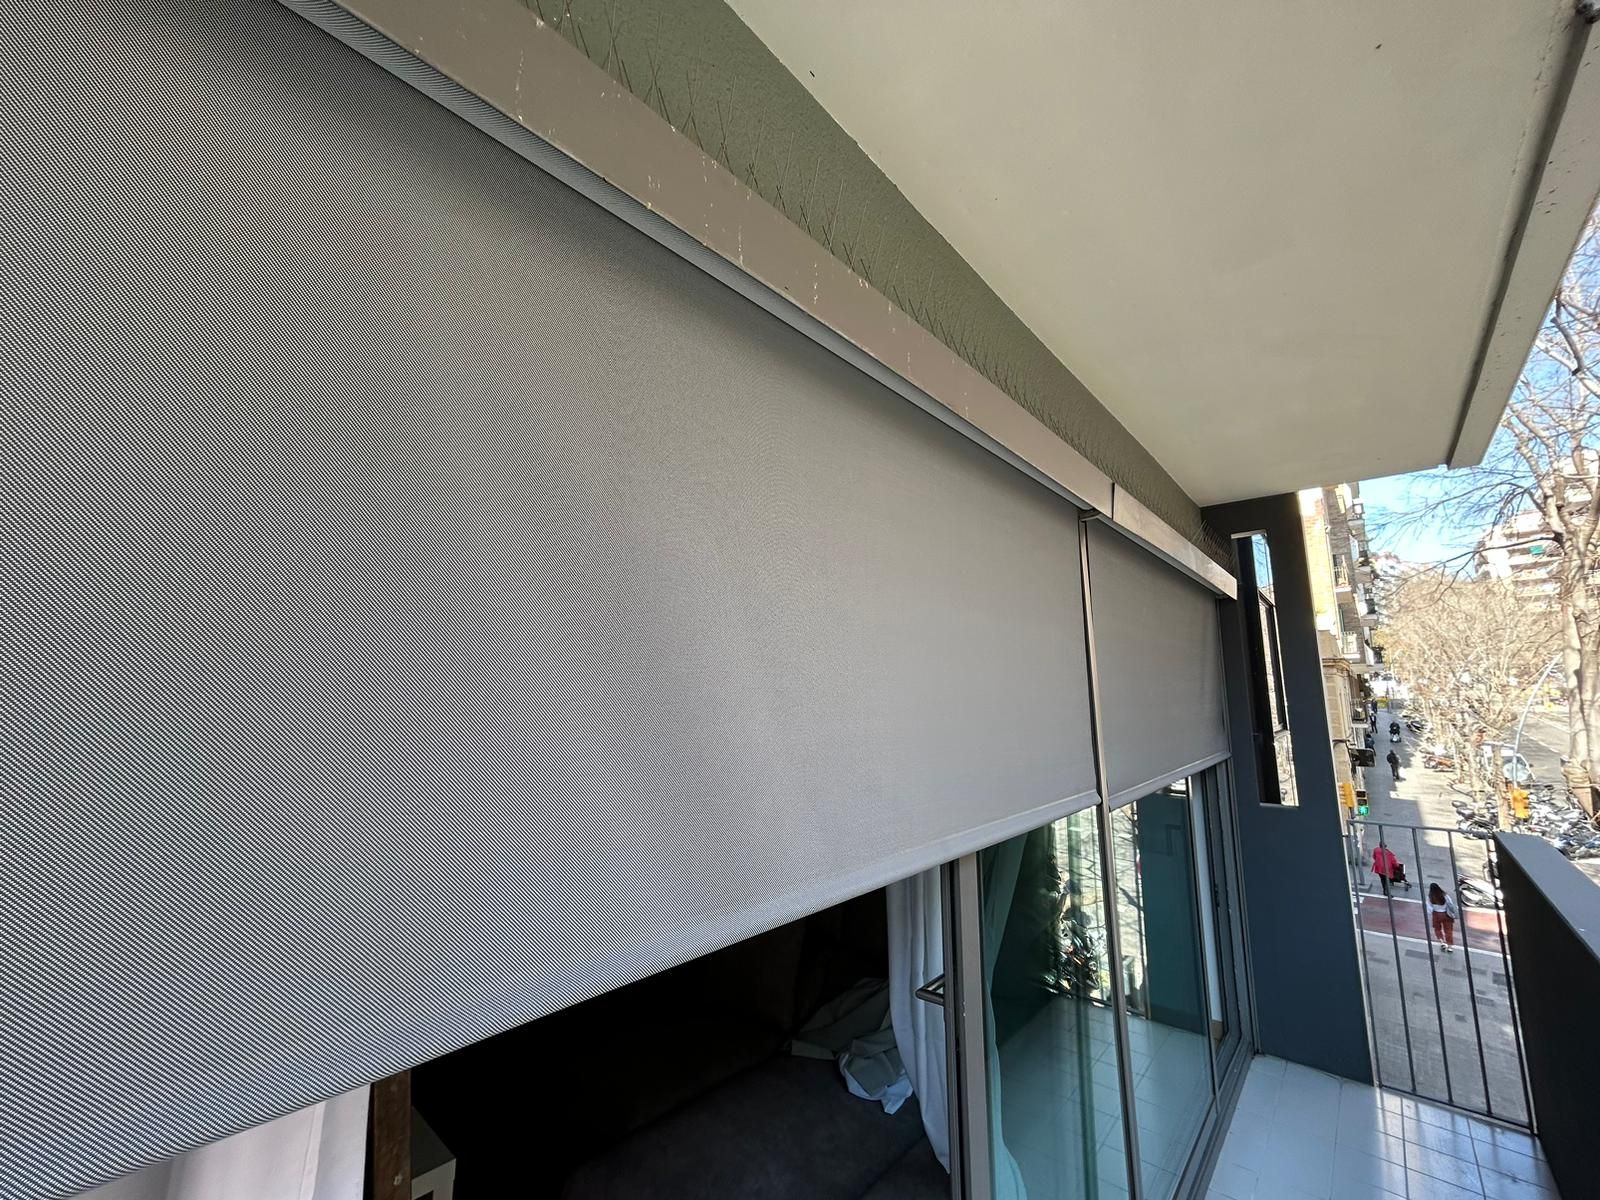 Tipos de cortinas exteriores, características y método de instalación